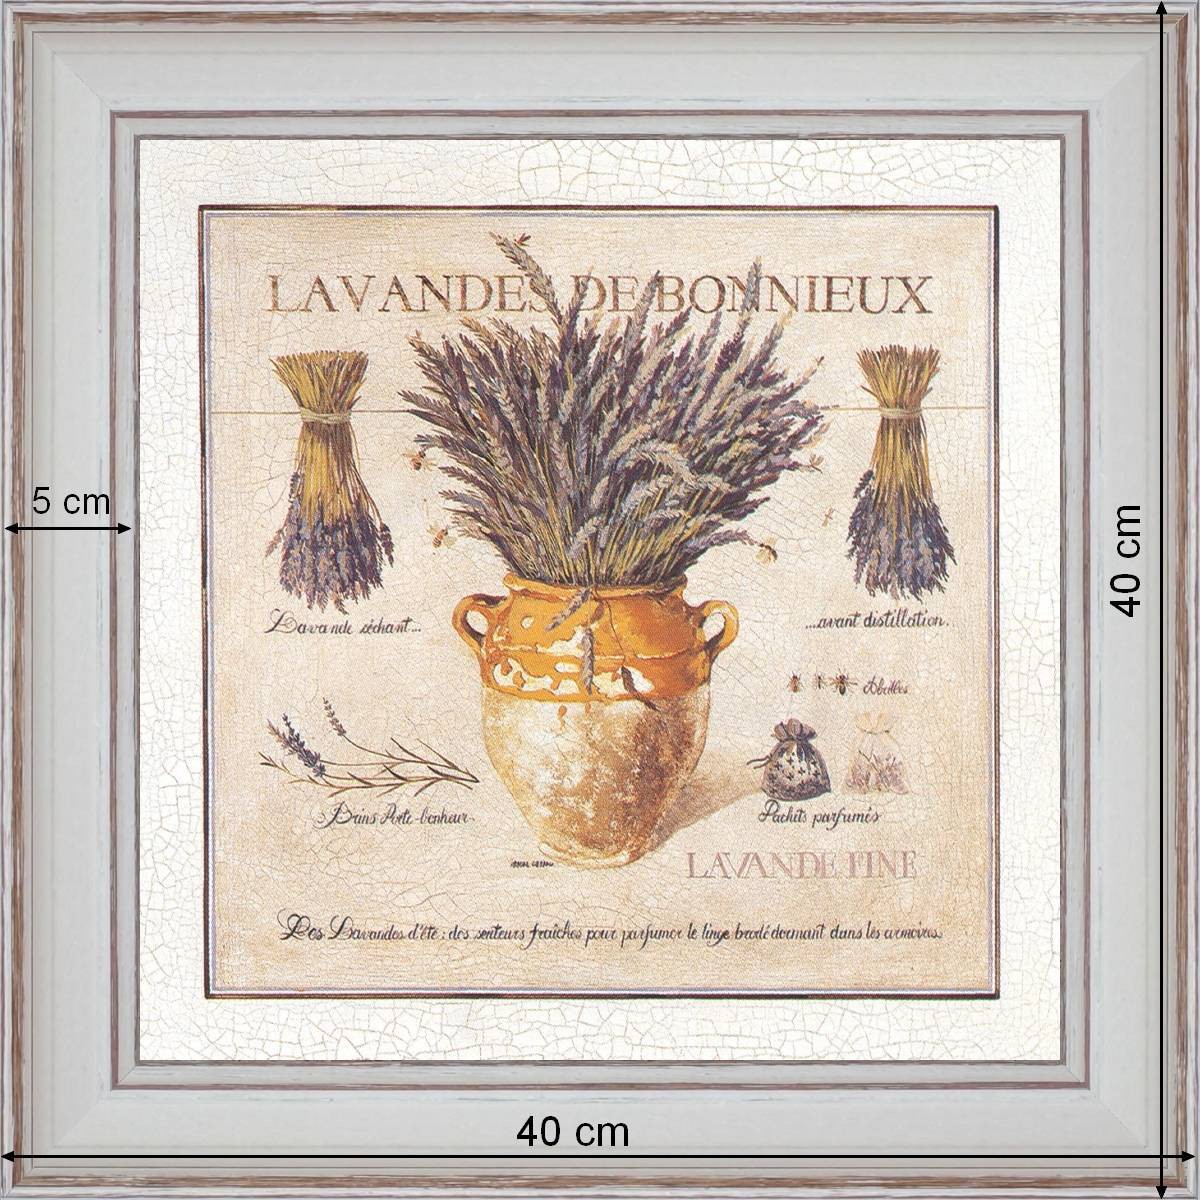 Lavender of Bonnieux - dimension 40 x 40 cm - White